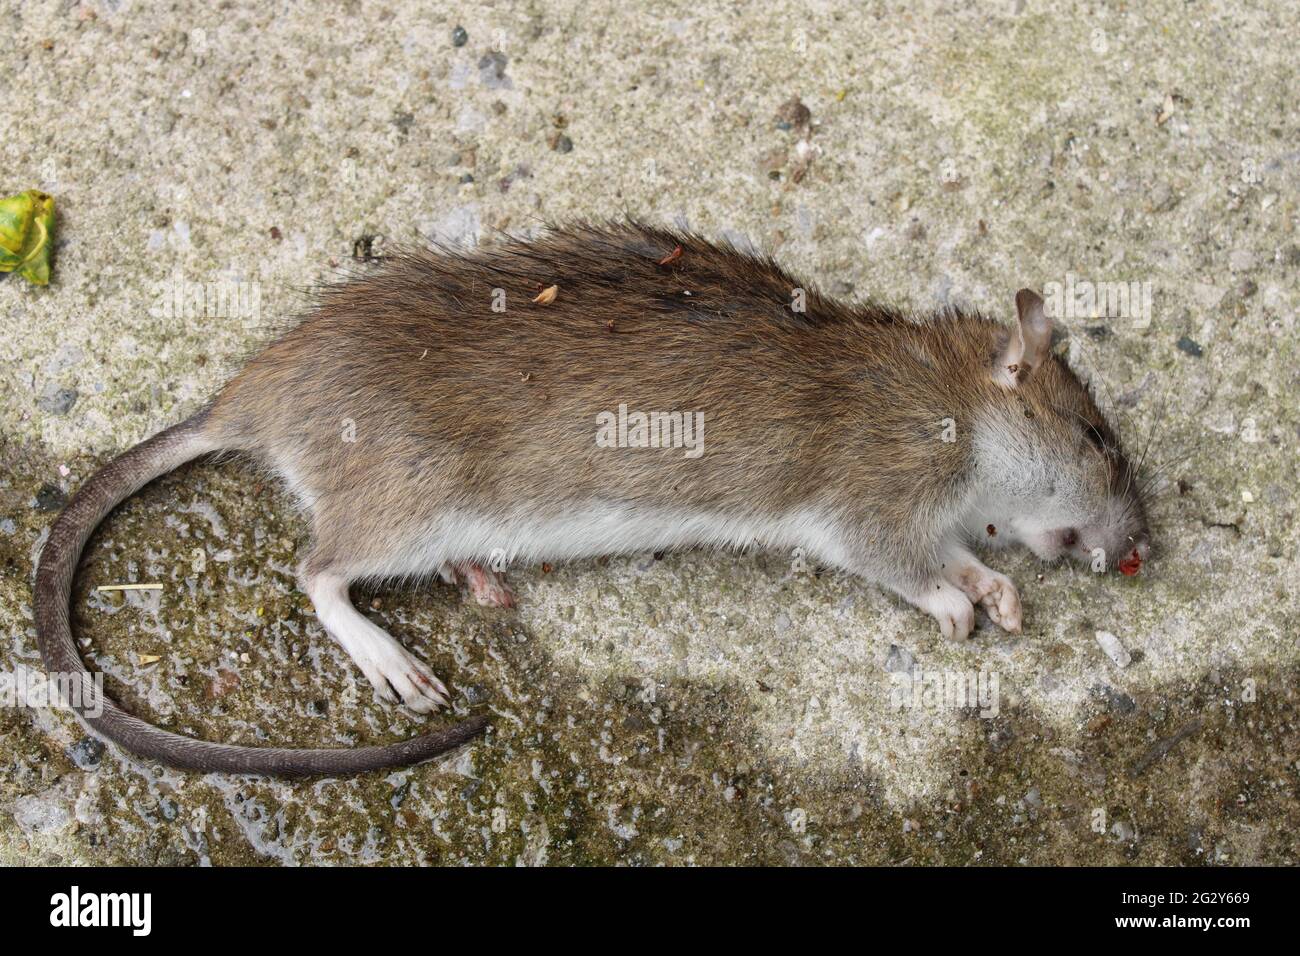 Dead Field mouse Latin name Apodemus sylvaticus. Vermin control concept Stock Photo